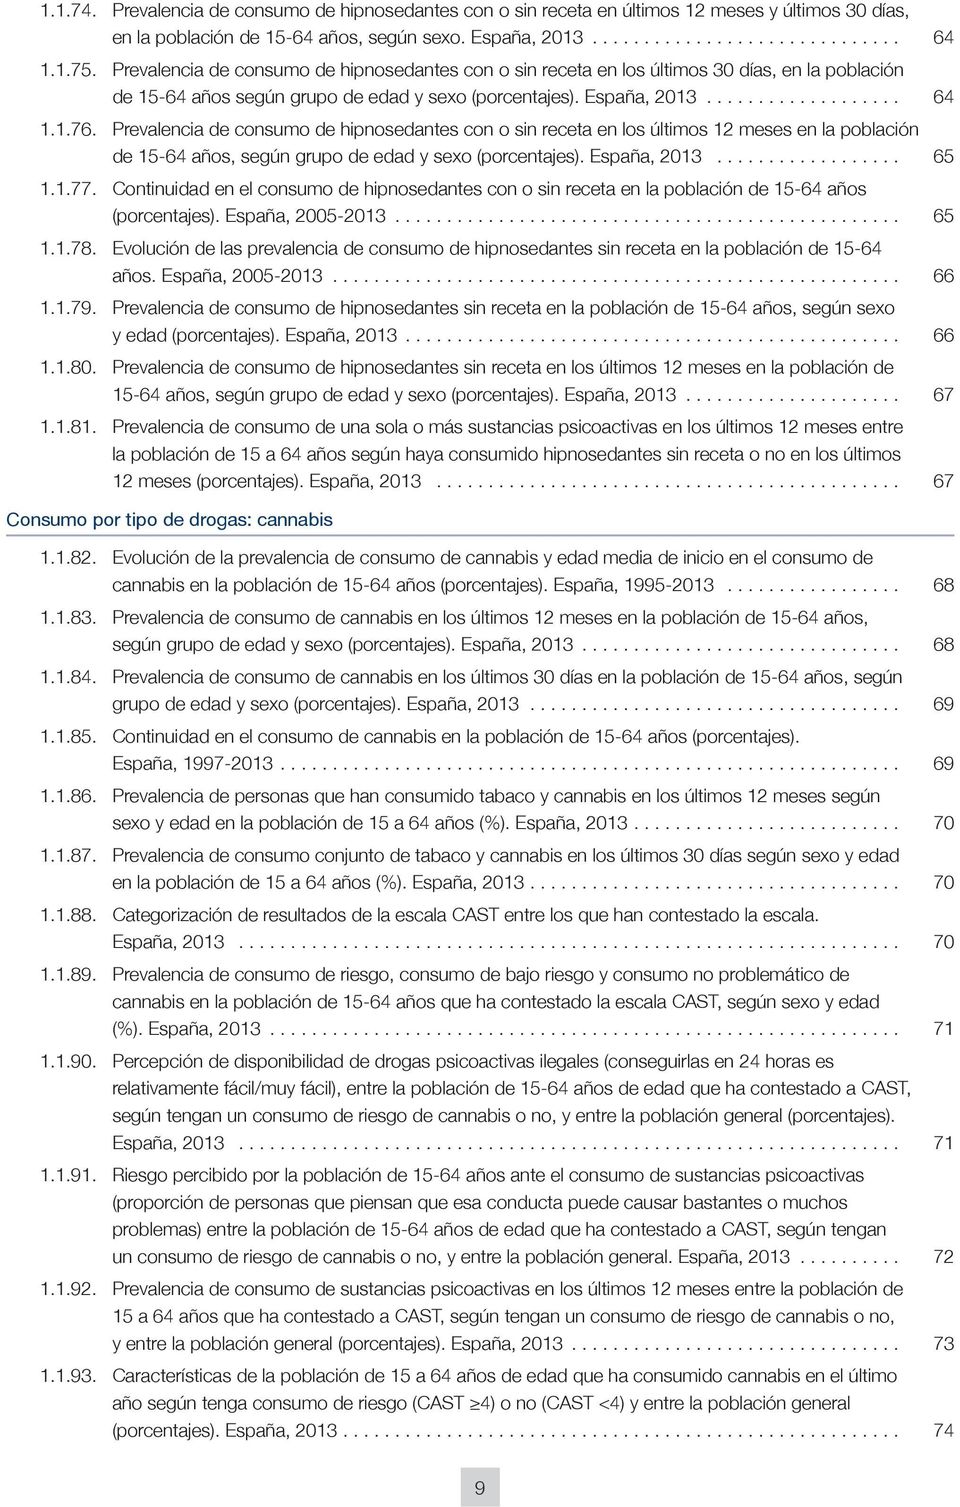 Prevalencia de consumo de hipnosedantes con o sin receta en los últimos 12 meses en la población de 15-64 años, según grupo de edad y sexo (porcentajes). España, 213.................. 65 1.1.77.